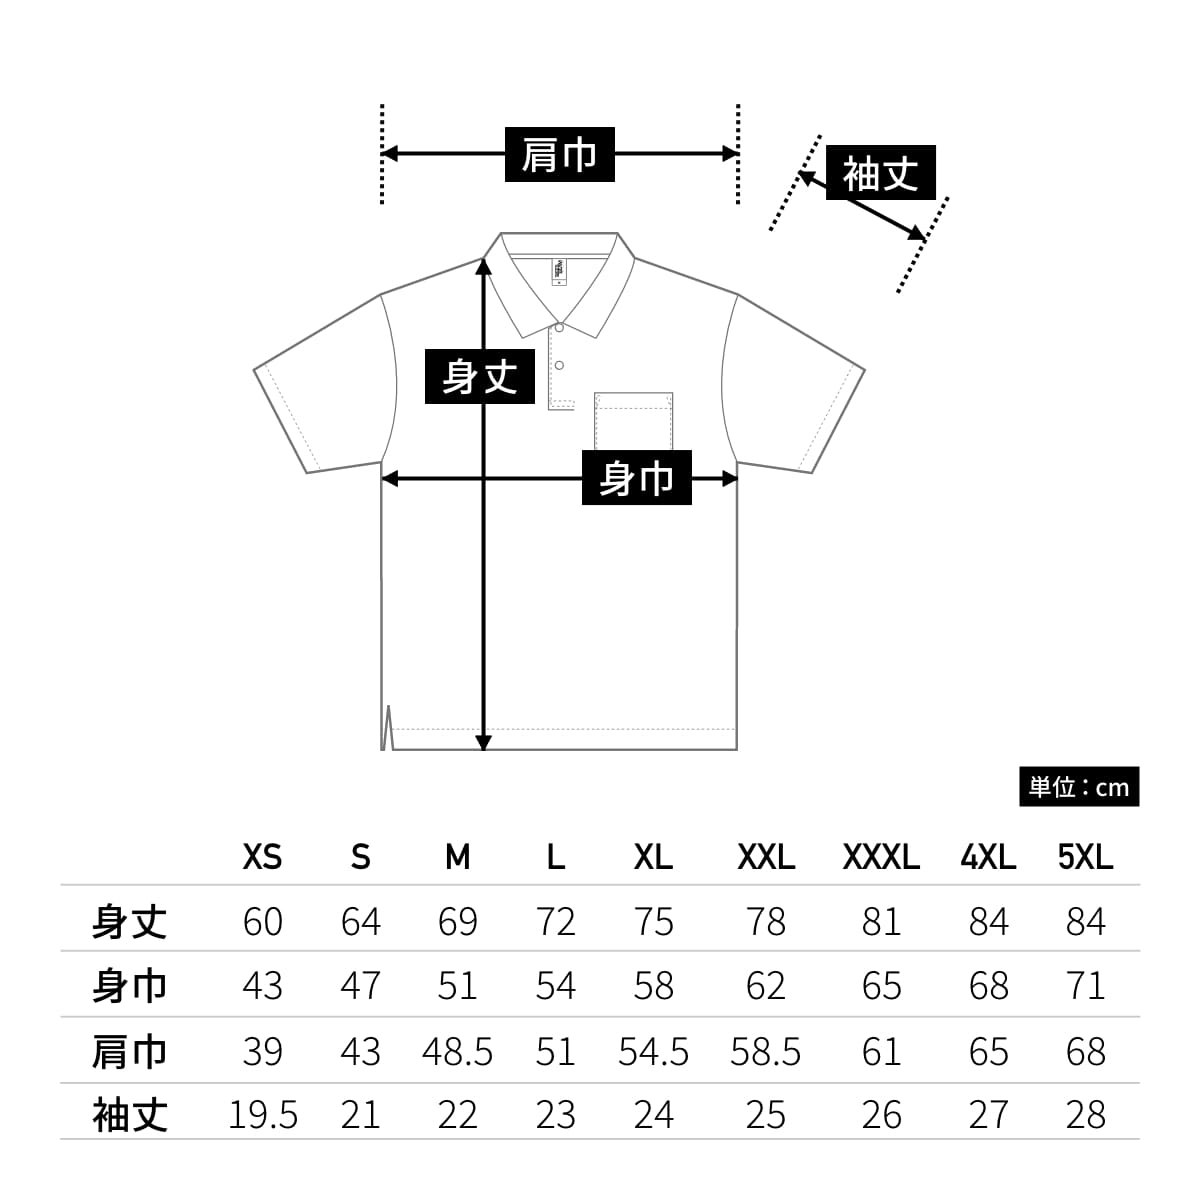 ポケット付き アクティブ ポロシャツ | ビッグサイズ | 1枚 | APP-260 | ホワイト